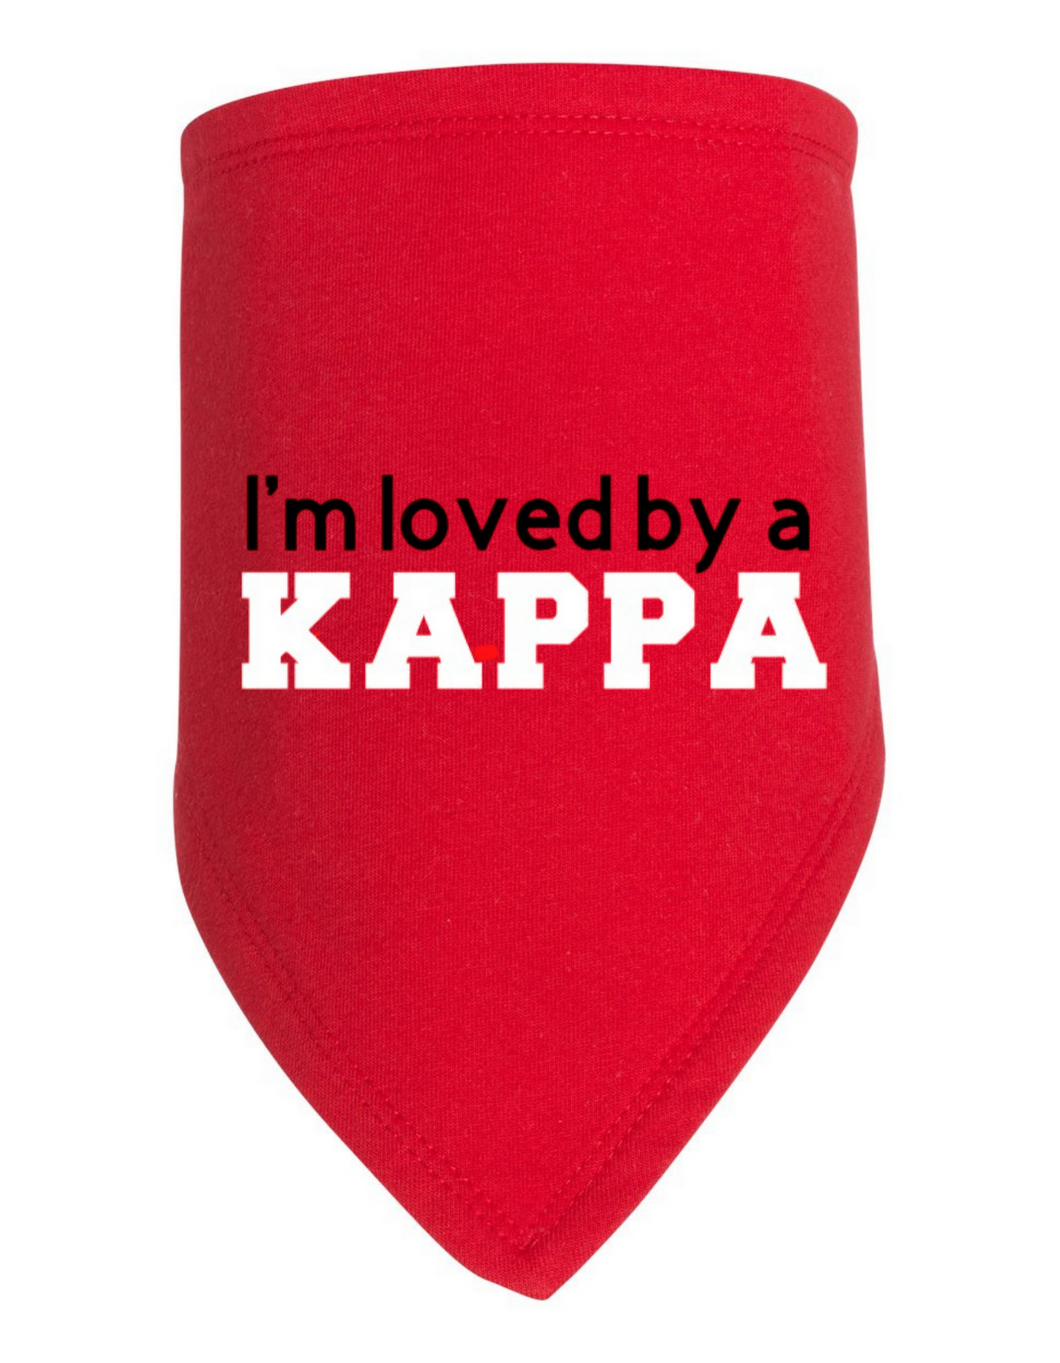 I'm Loved by a Kappa Bib